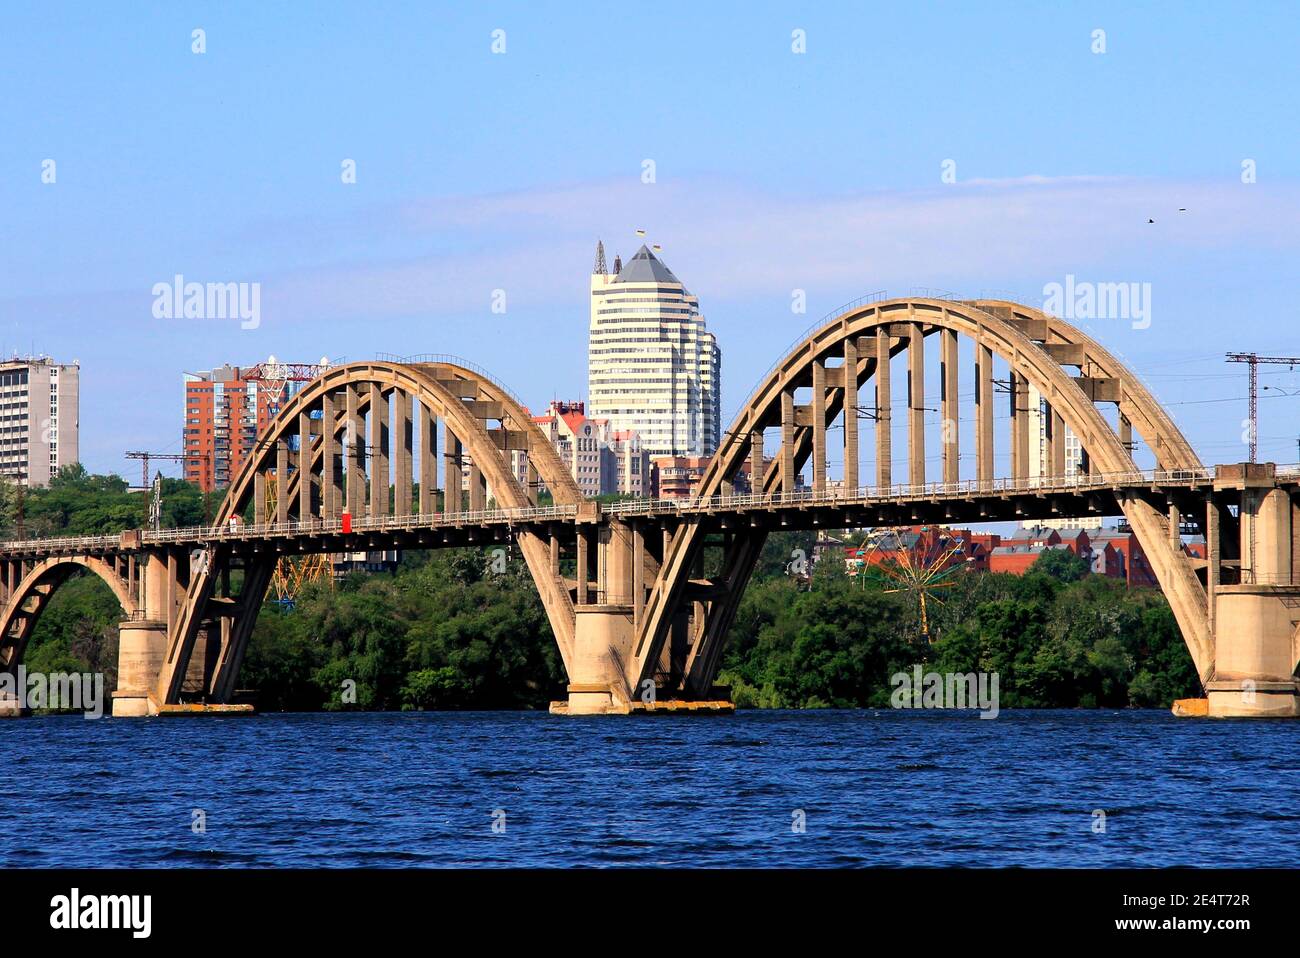 Pont ferroviaire voûté sur la rivière, gratte-ciel, tours. Printemps, vue d'été de la rivière Dnipro et de la ville Dnepropetrovsk, Dnepr, Ukraine. Banque D'Images